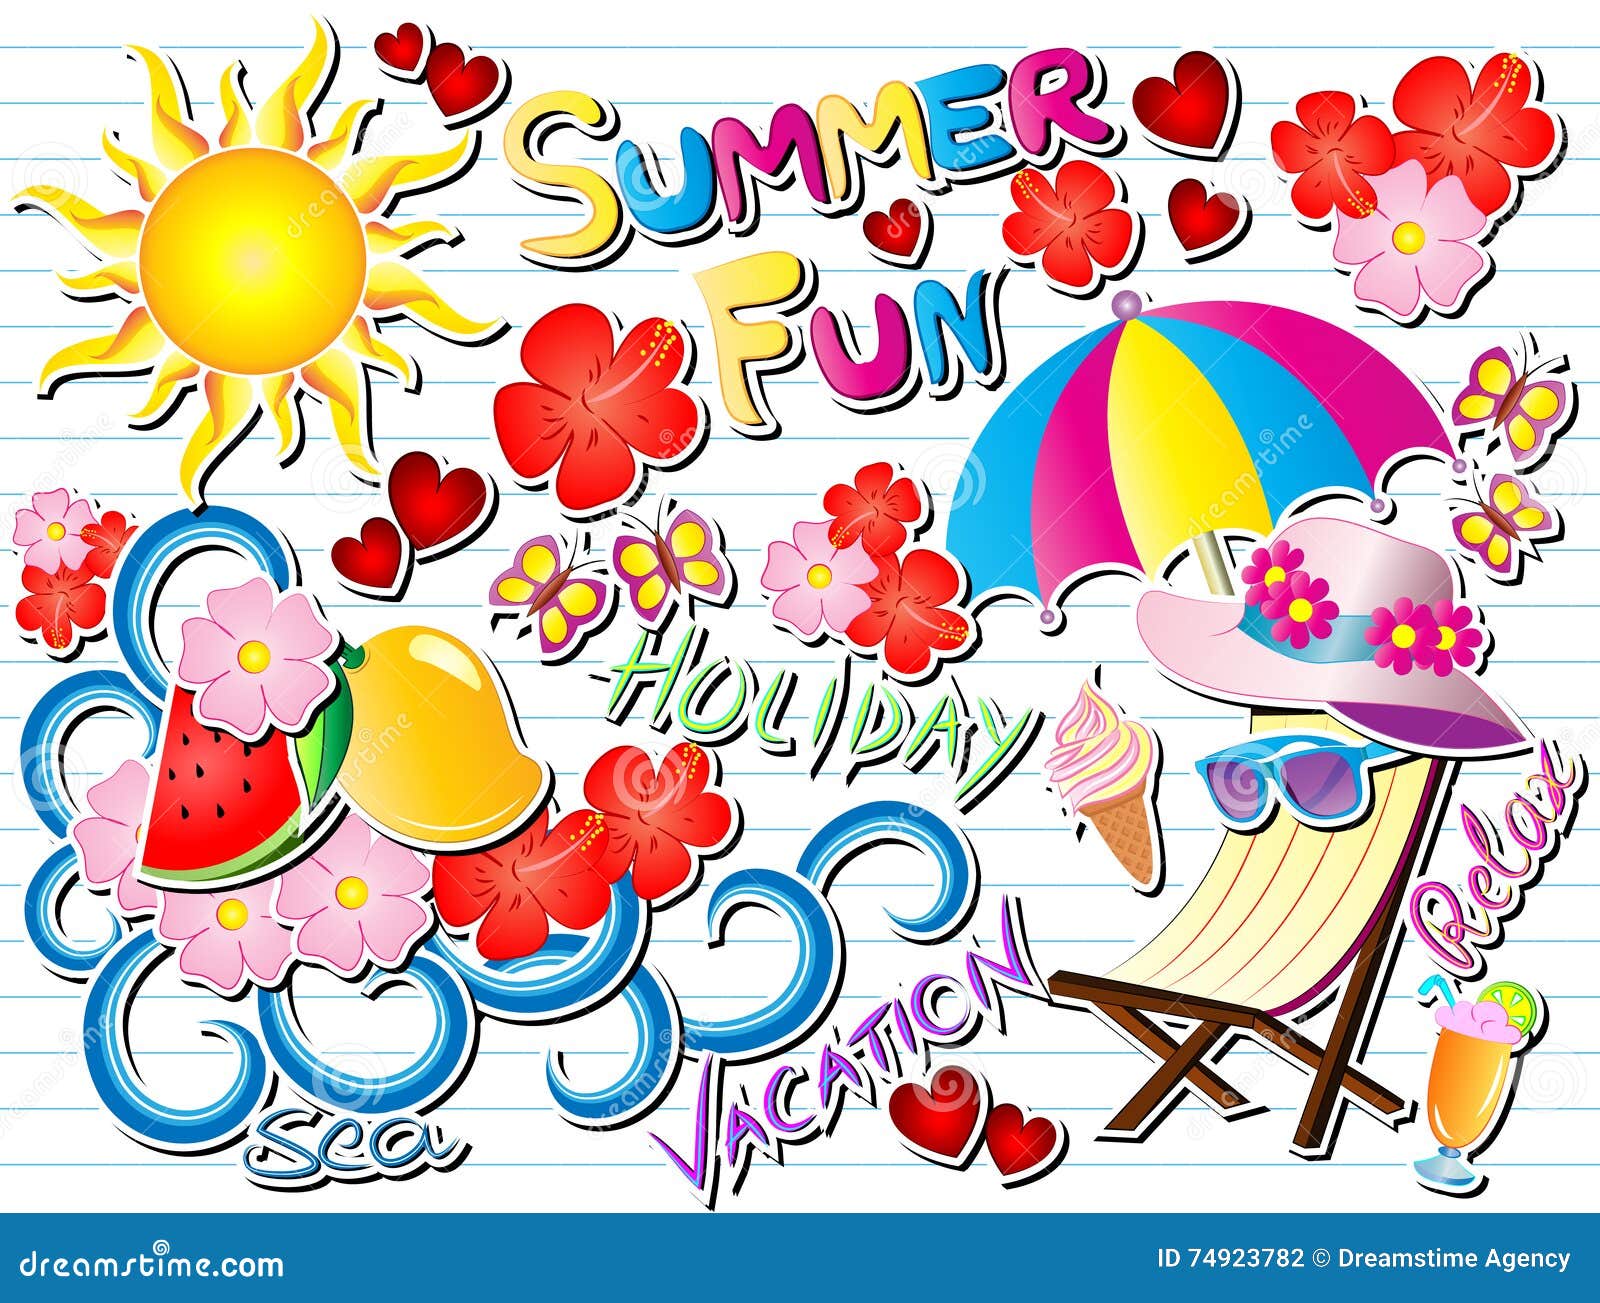 summer fun doodle  